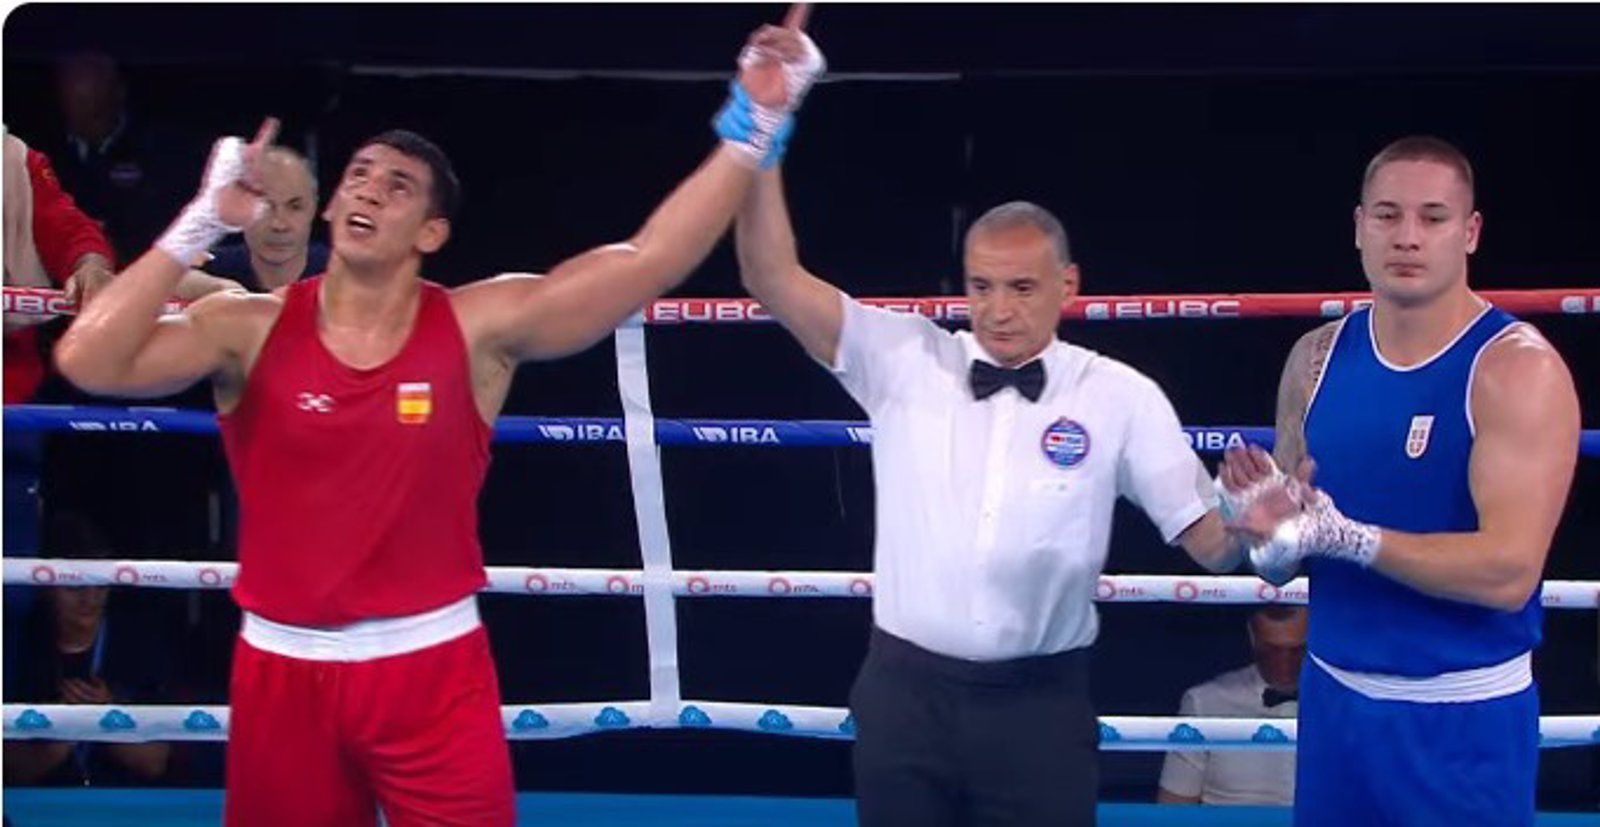 Boxeo.- El boxeador español Ayoub Ghadfa Drissi, campeón de Europa del peso superpesado